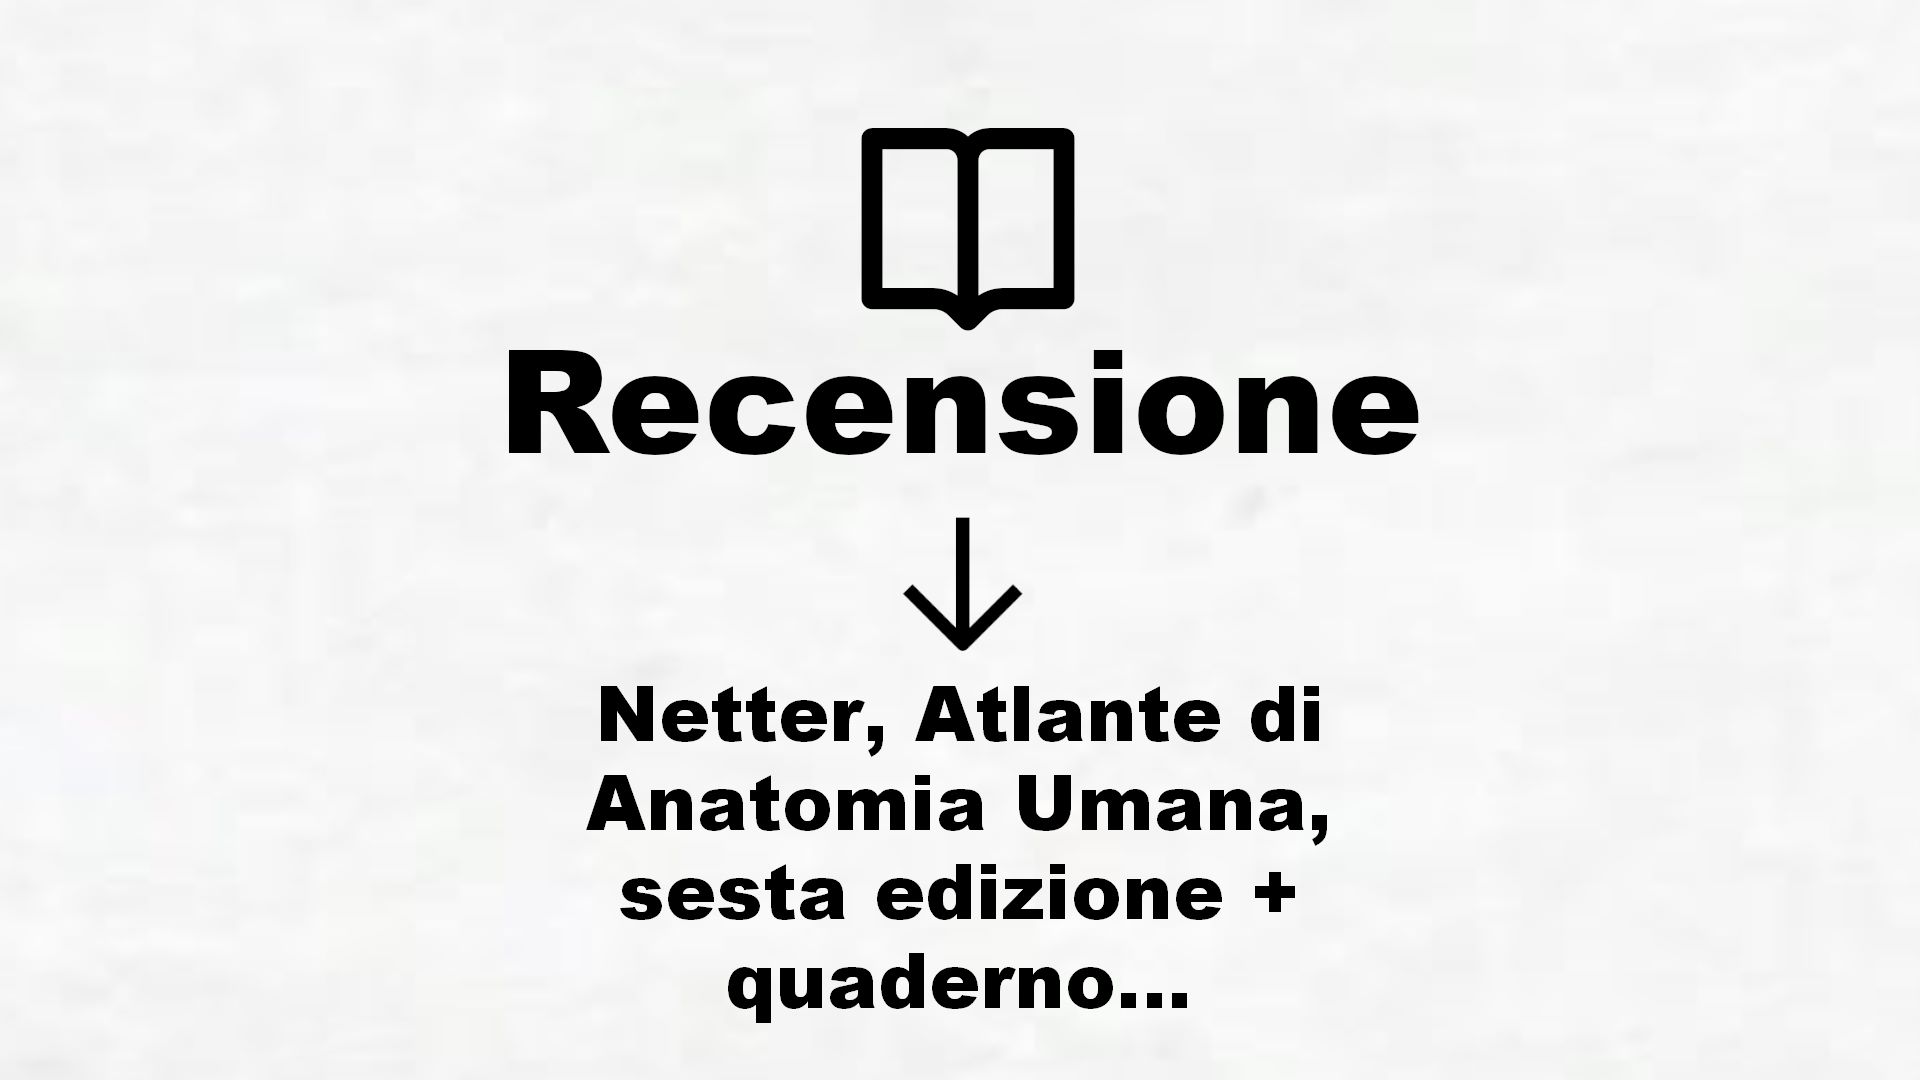 Netter, Atlante di Anatomia Umana, sesta edizione + quaderno con domande – Cartonato – 2 – Recensione Libro